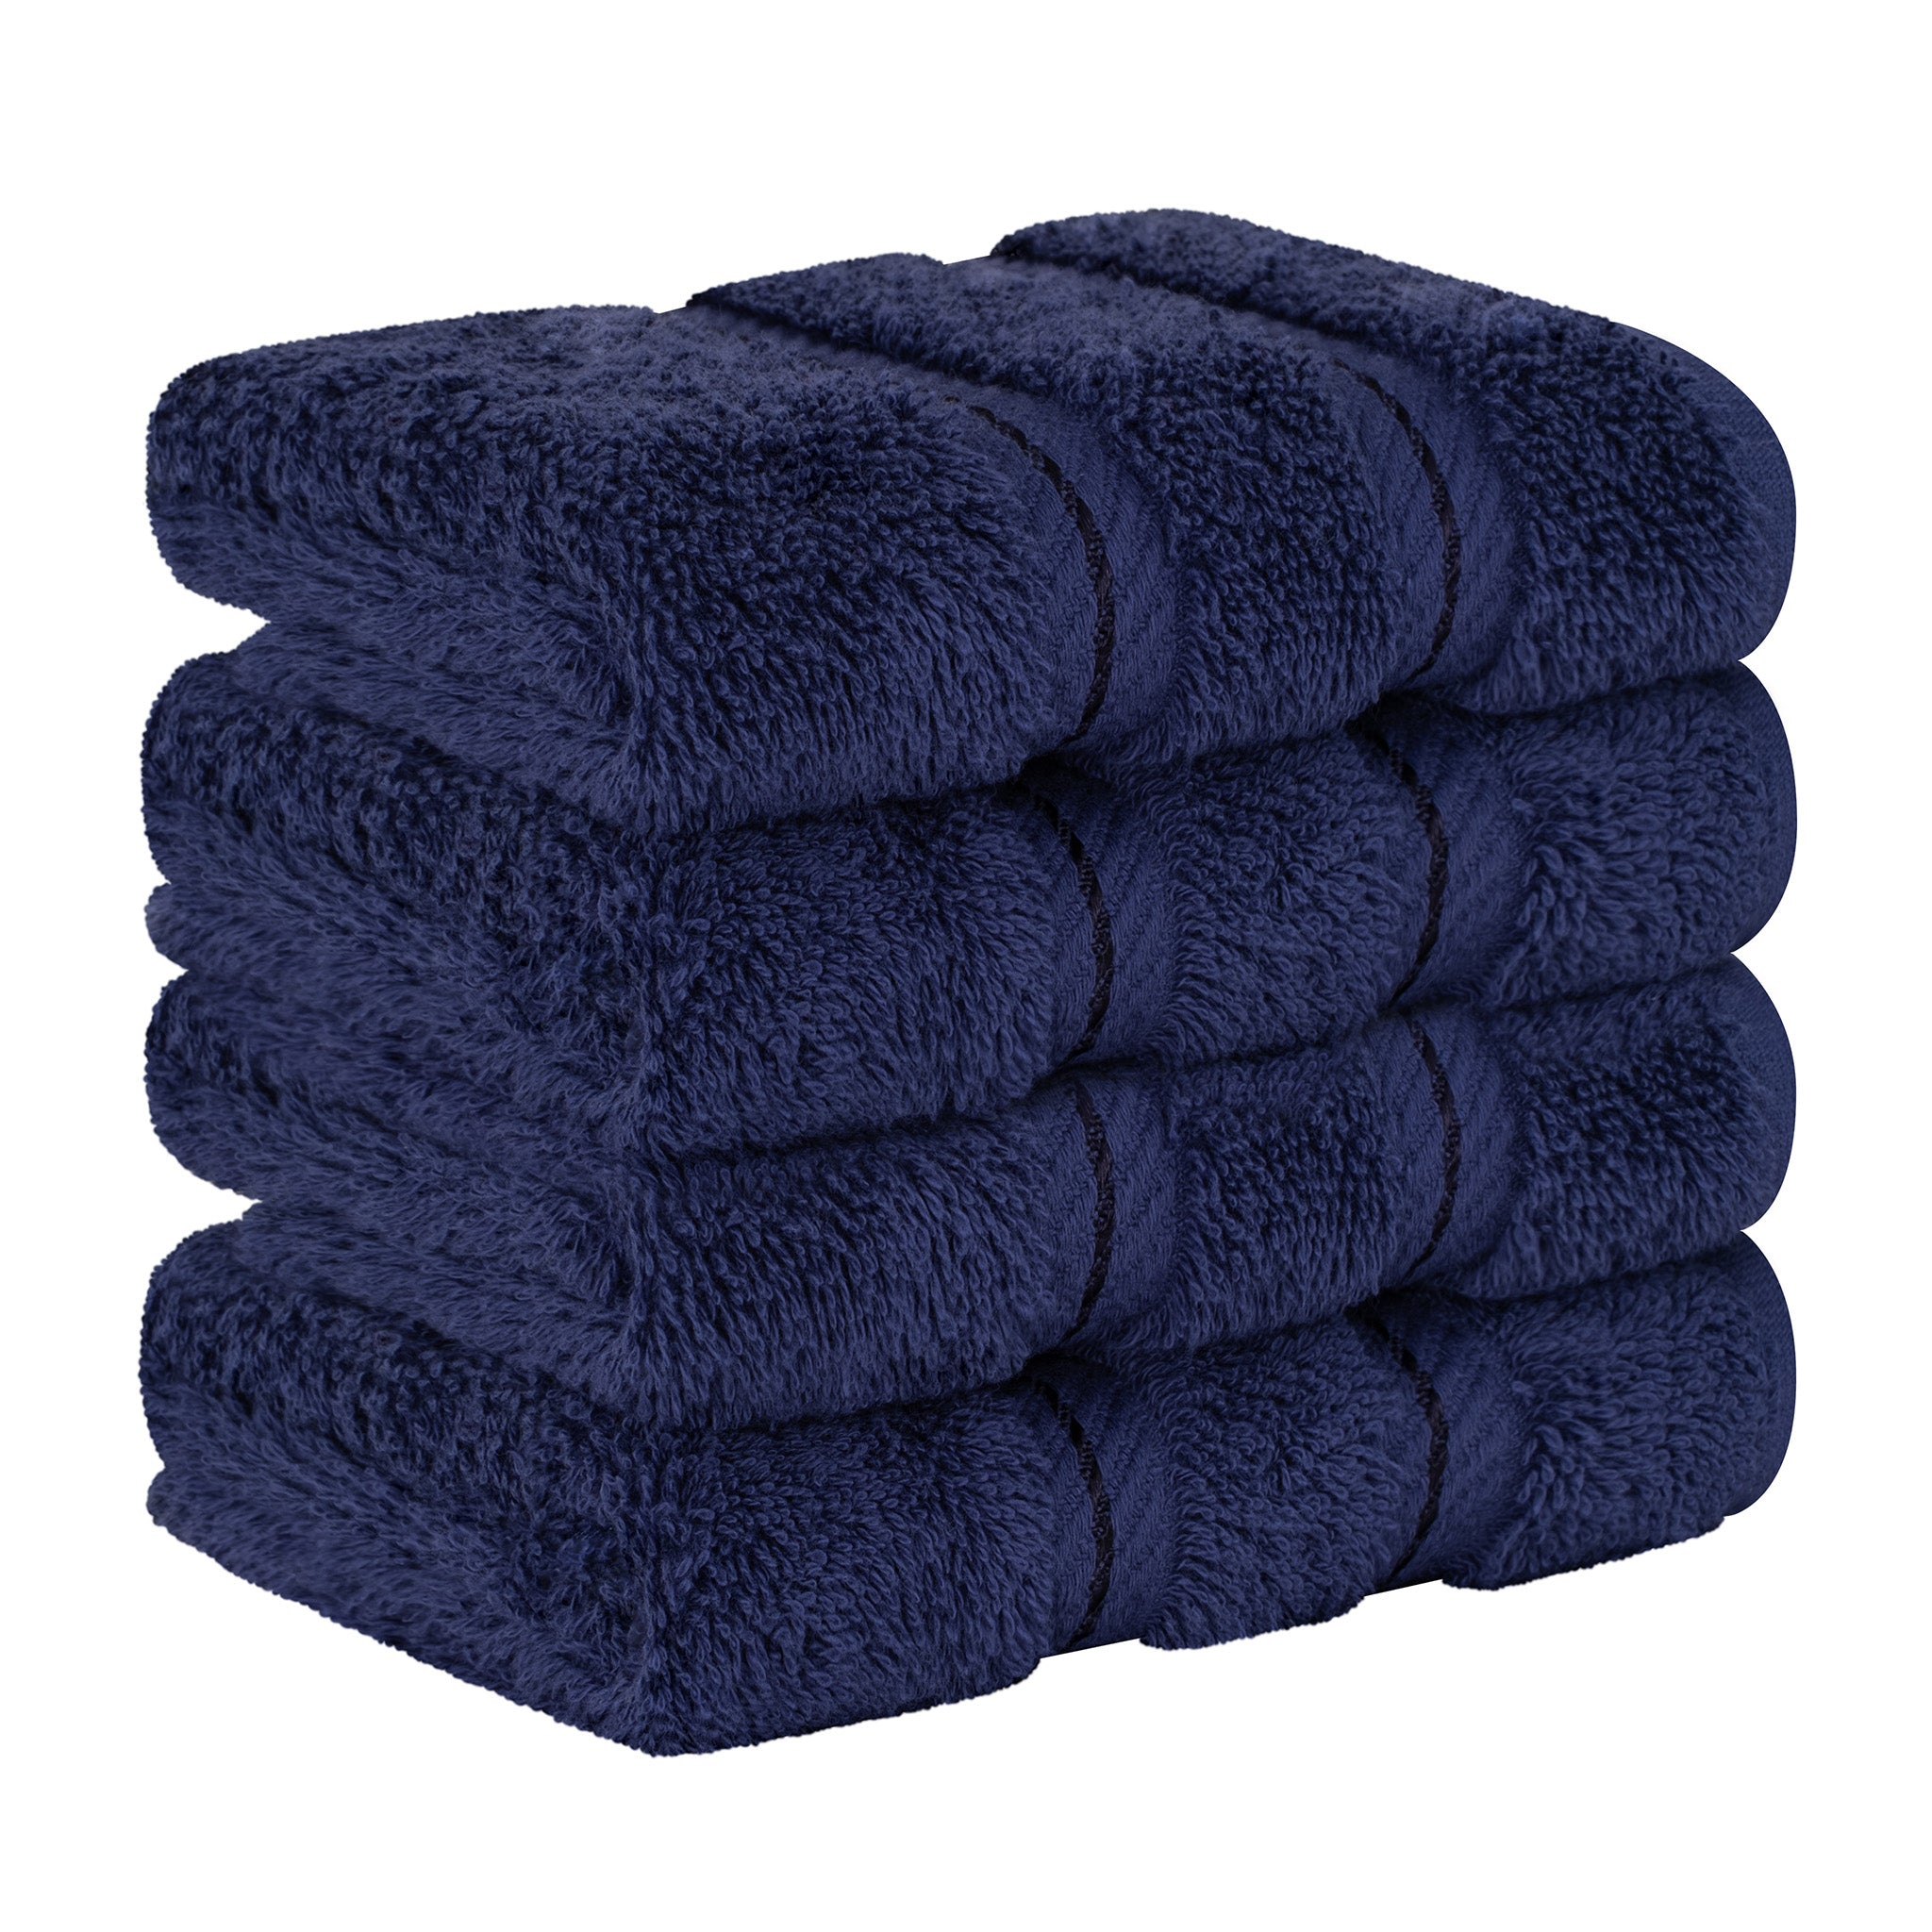 American Soft Linen 100% Turkish Cotton 4 Piece Washcloth Set navy-blue-6